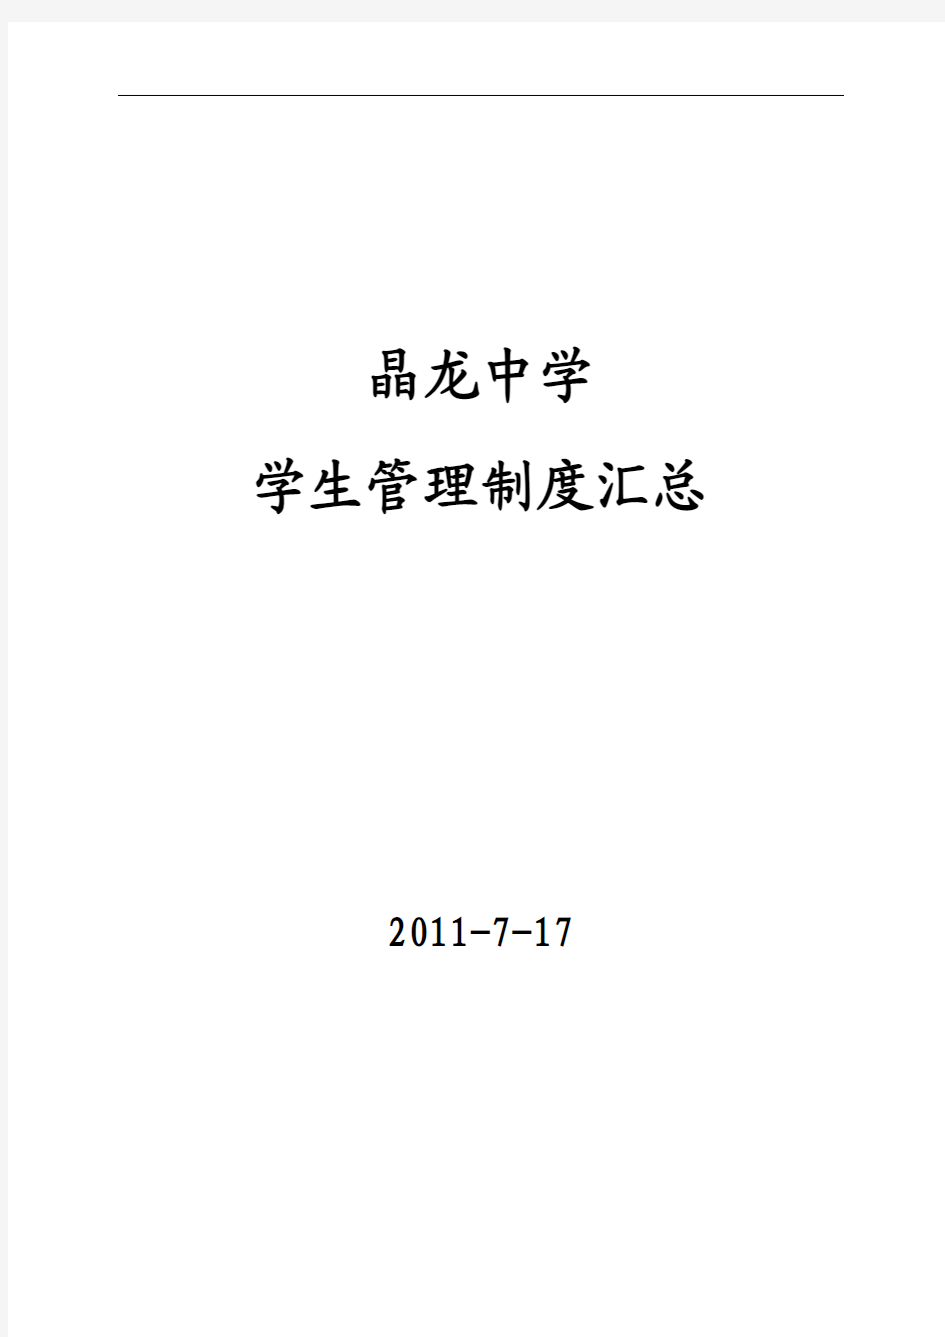 晶龙中学学生管理制度汇总(2011年7月17日修订)